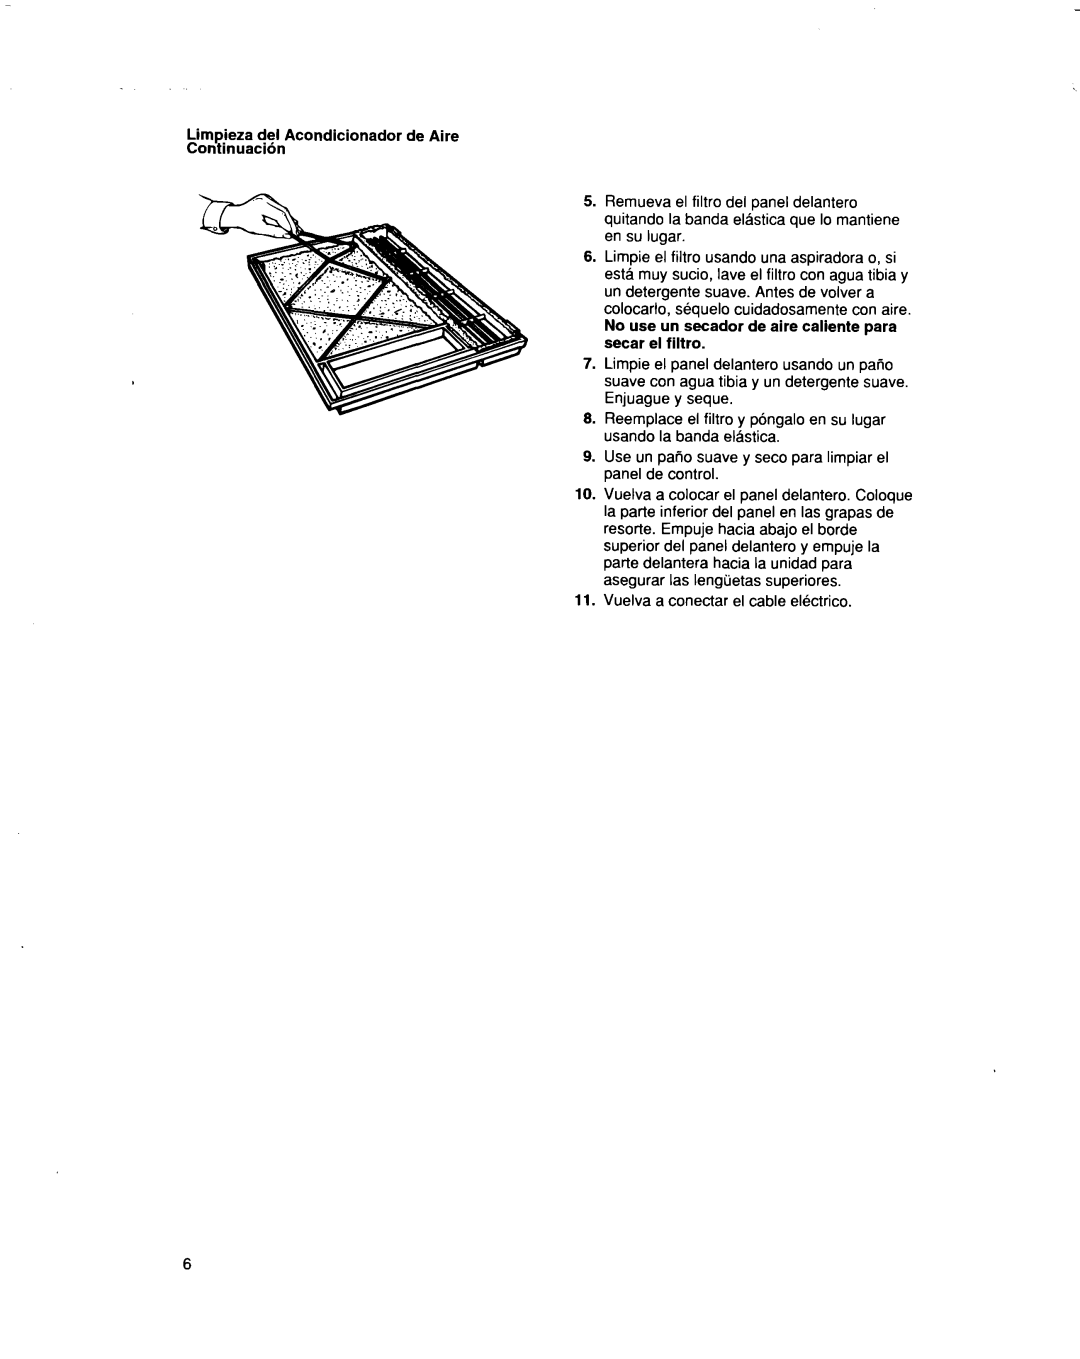 Whirlpool BHAC1000XS0 manual Limpieza del Acondicionador de Aire Continuacibn, Vuelva a conectar el cable electrico 